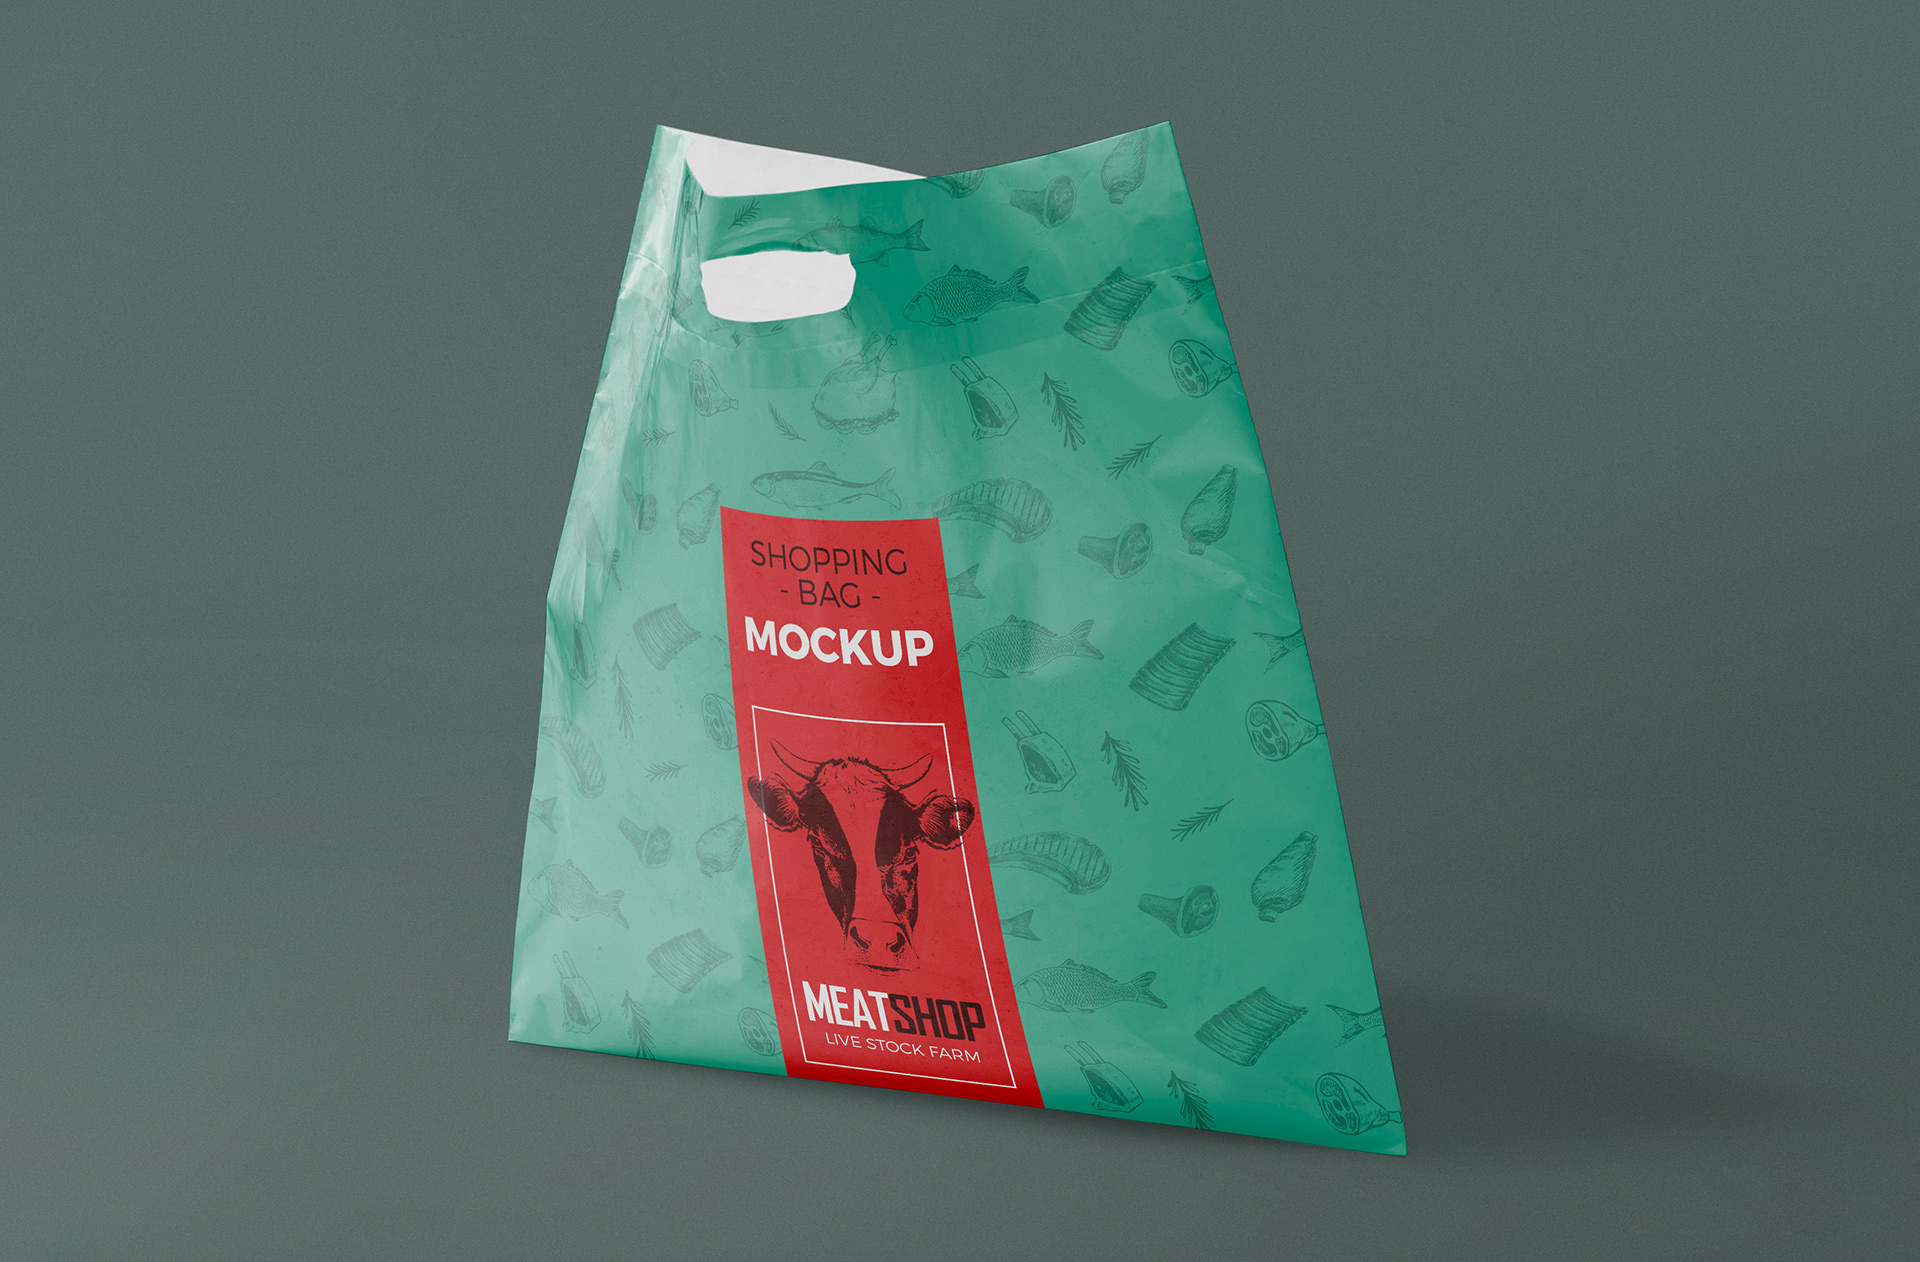 独立式塑料袋样机 Standing Plastic Bag Mockup插图1